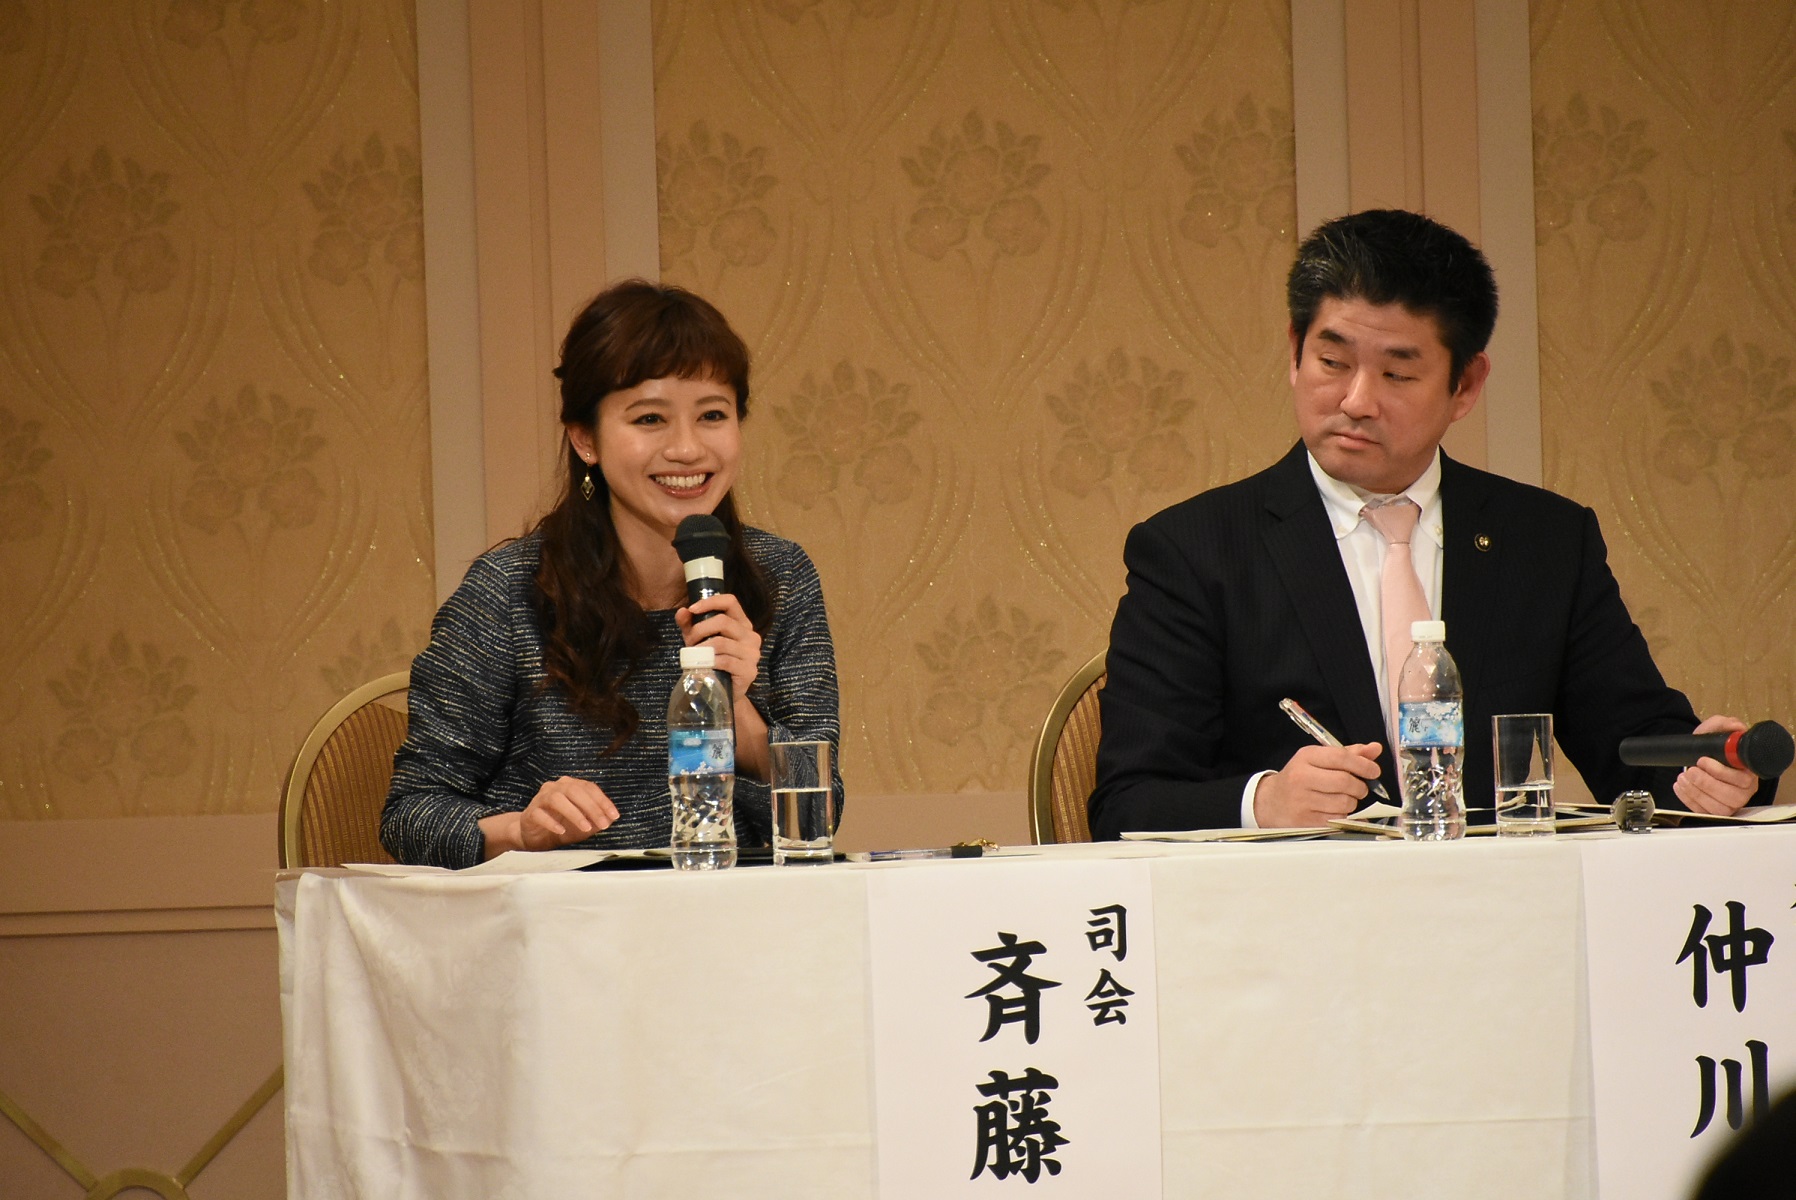 左から斉藤雪乃さん(司会・タレント)、仲川げん奈良市長の画像